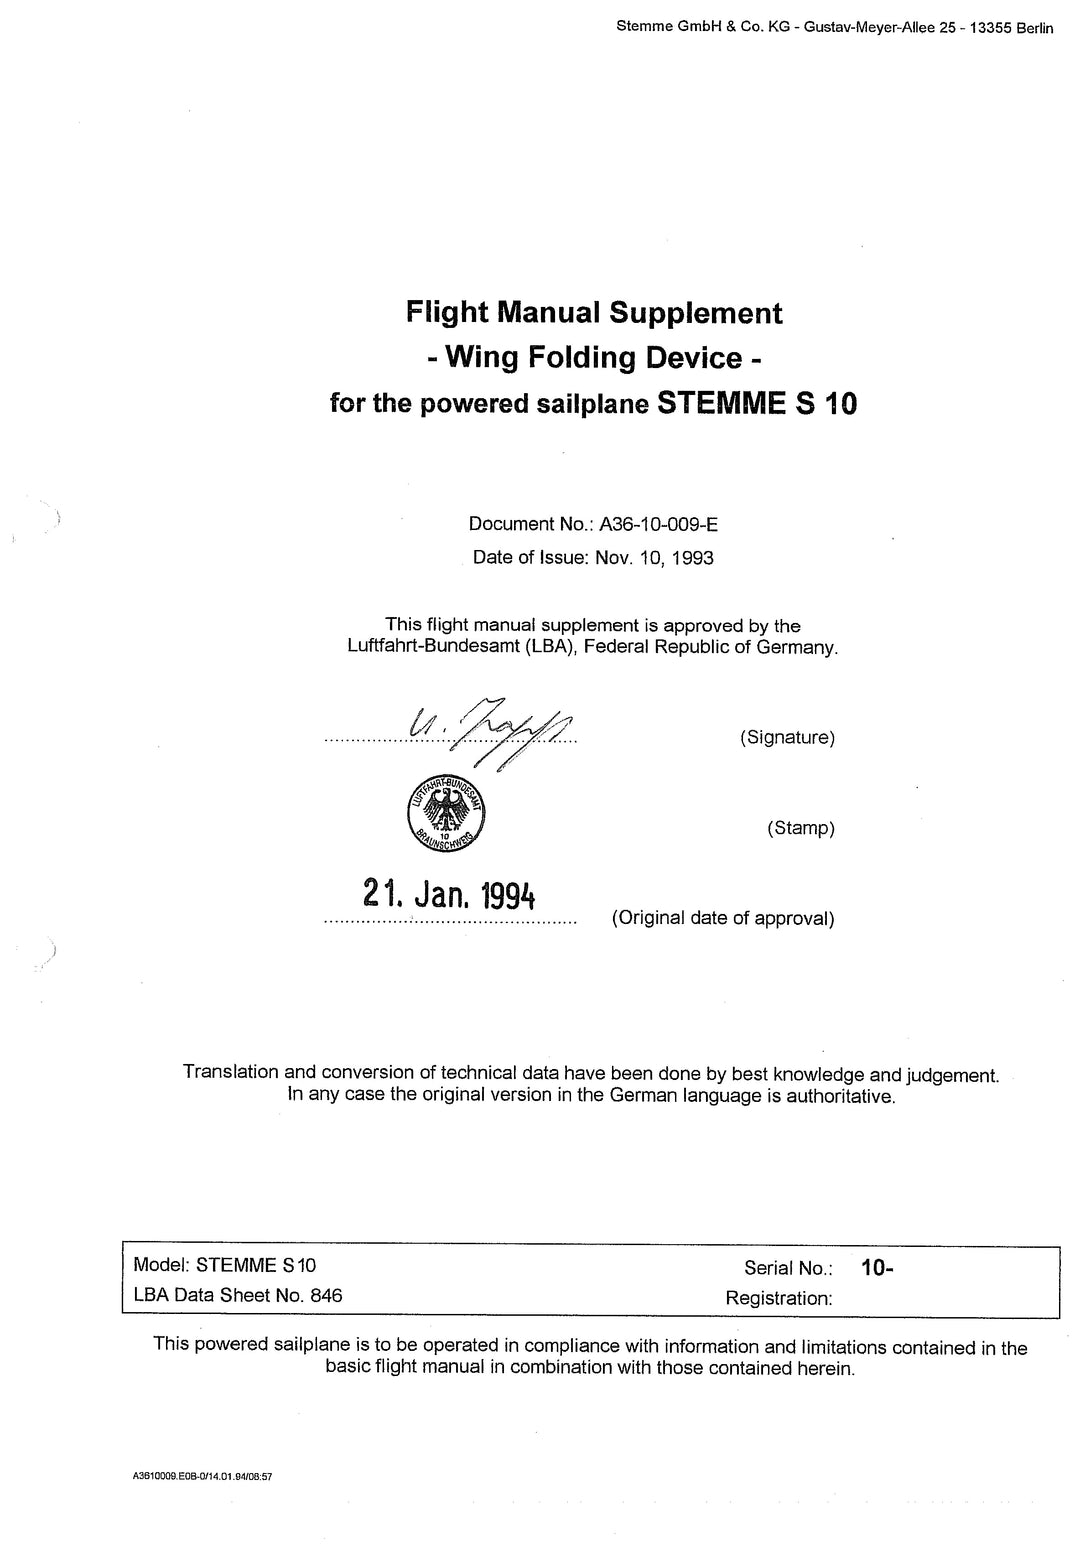 S10-V,-VT Flight Manual Supplement Wing Fold